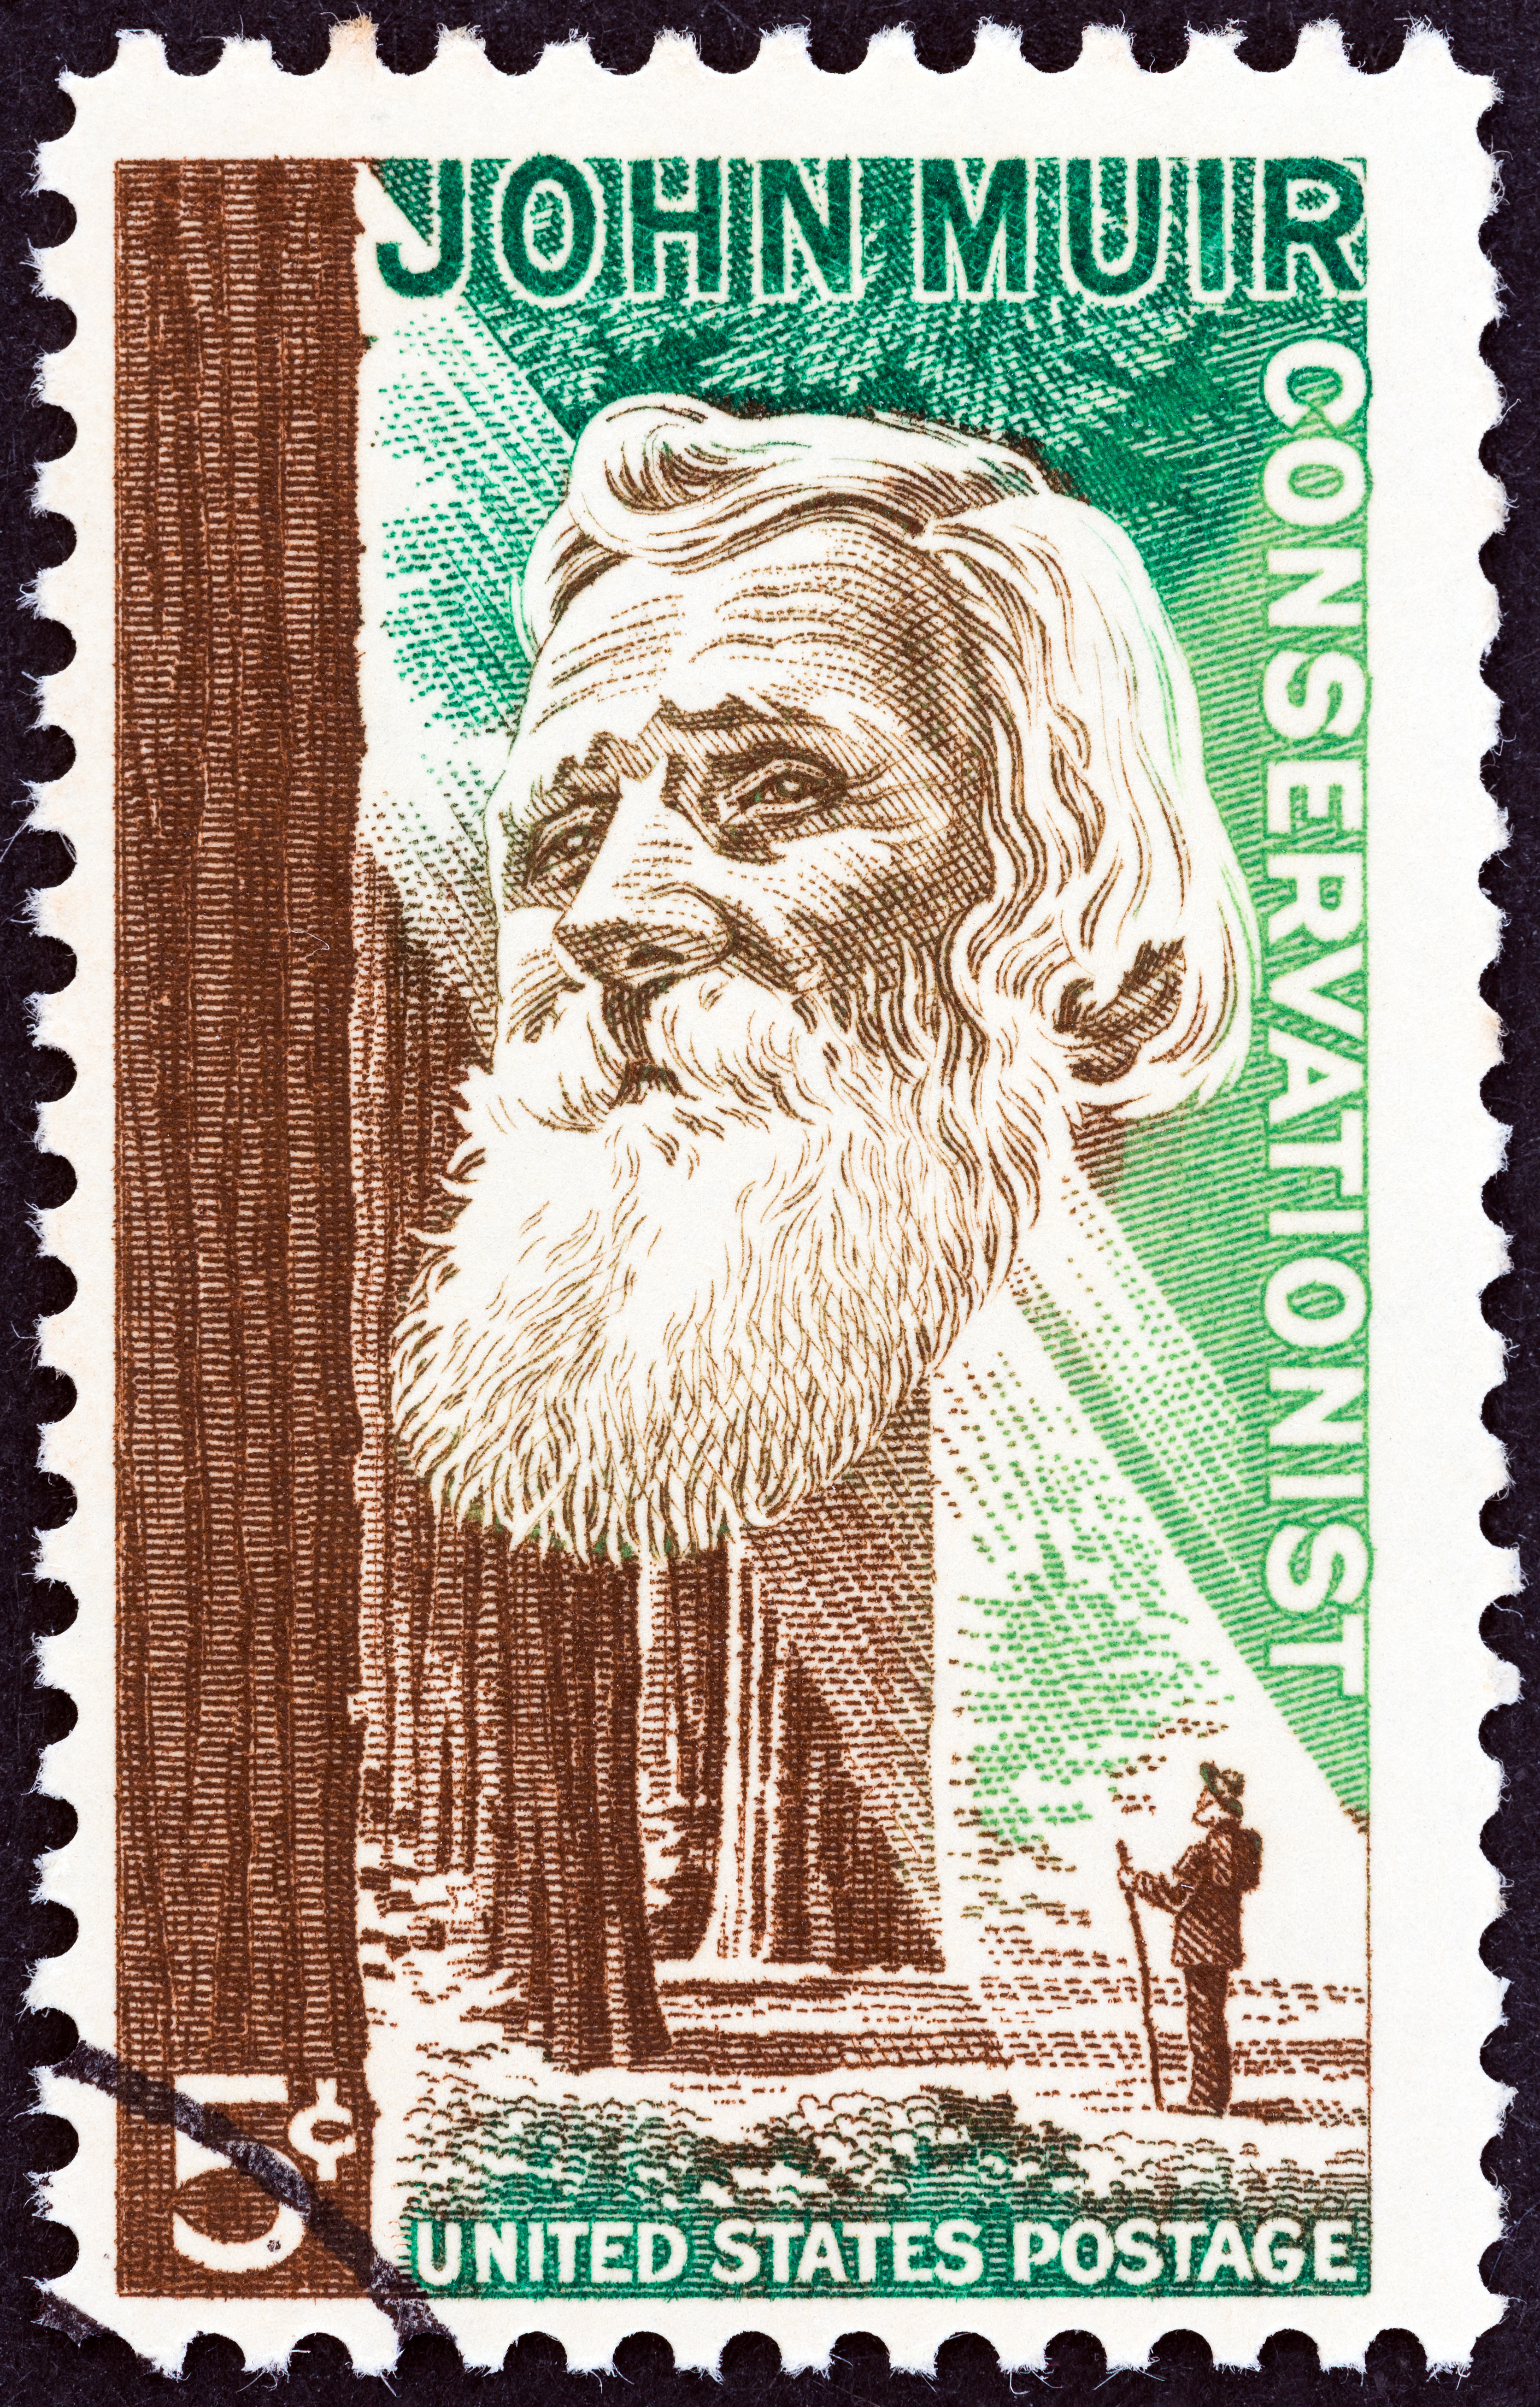 John Muir postage stamp 